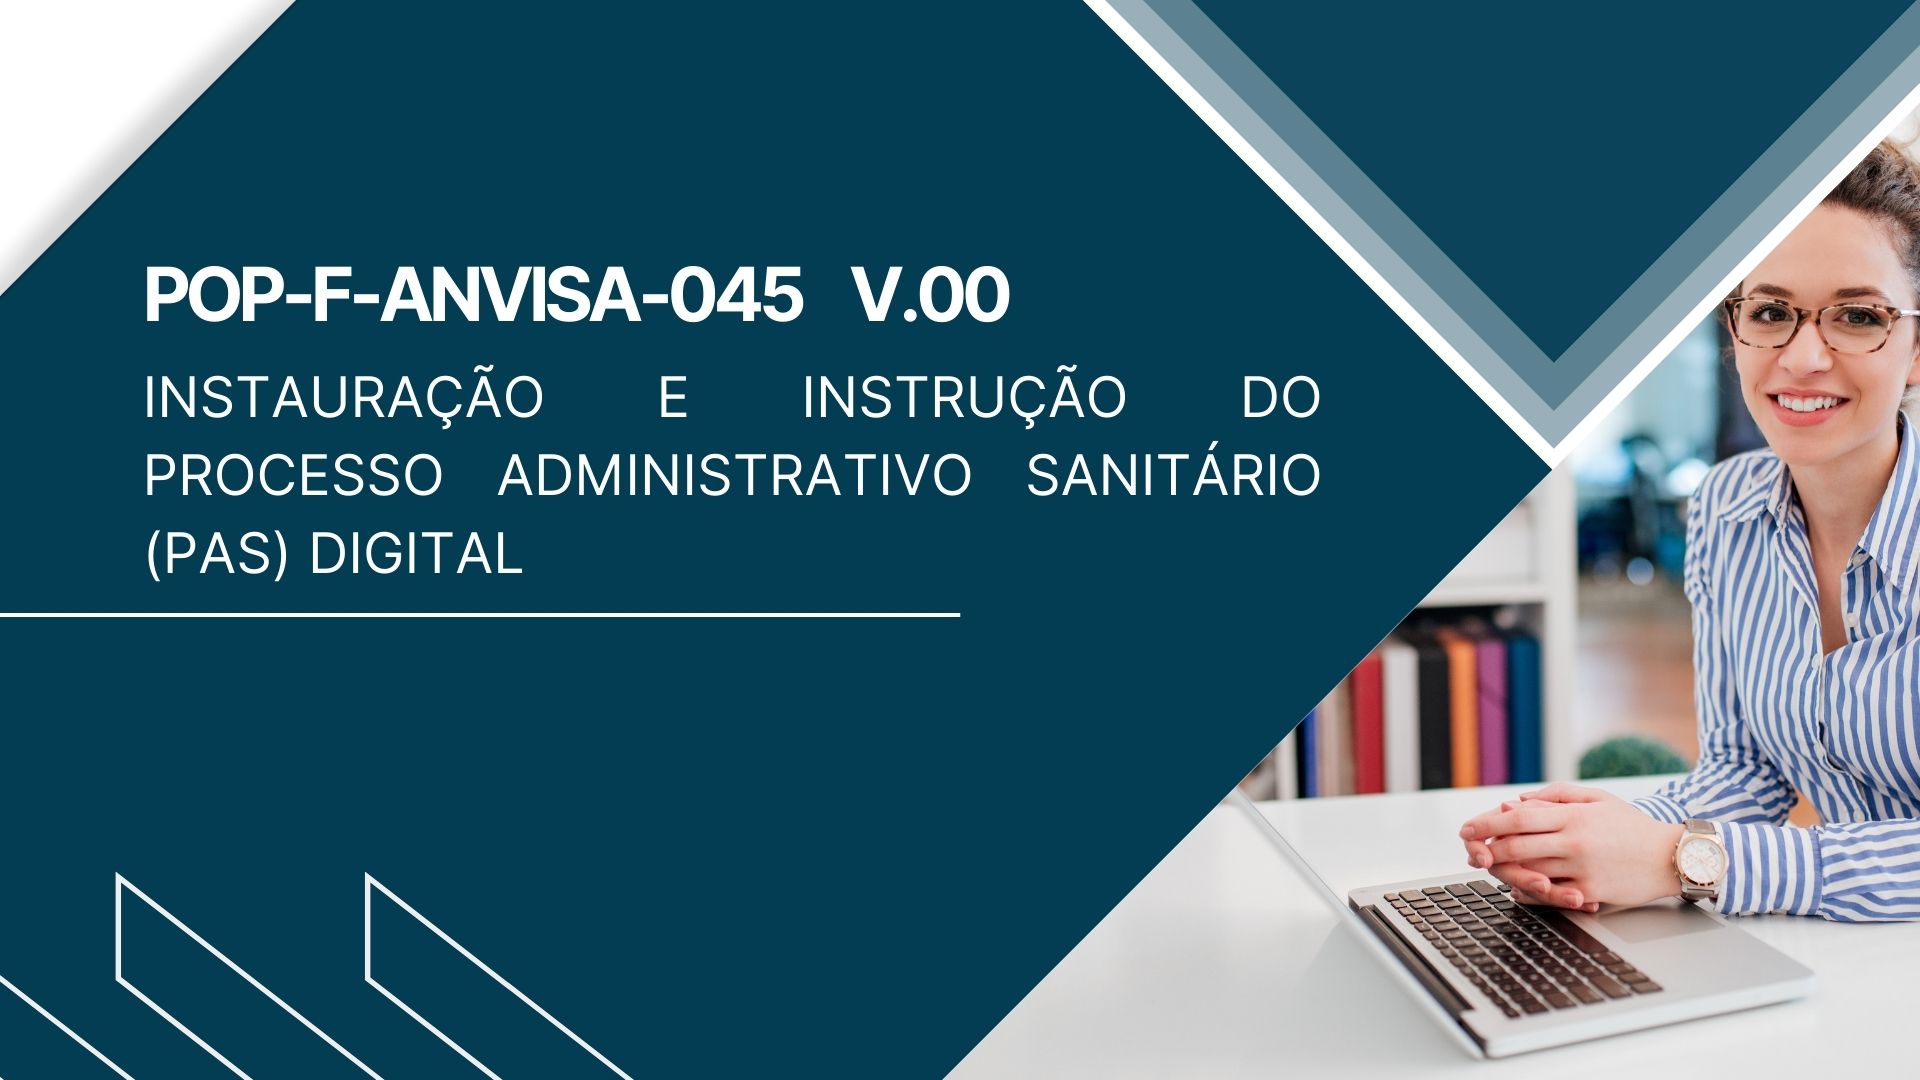 POP-F-ANVISA-045 - INSTAURAÇÃO E INSTRUÇÃO DO PROCESSO ADMINISTRATIVO SANITÁRIO (PAS) DIGITAL 